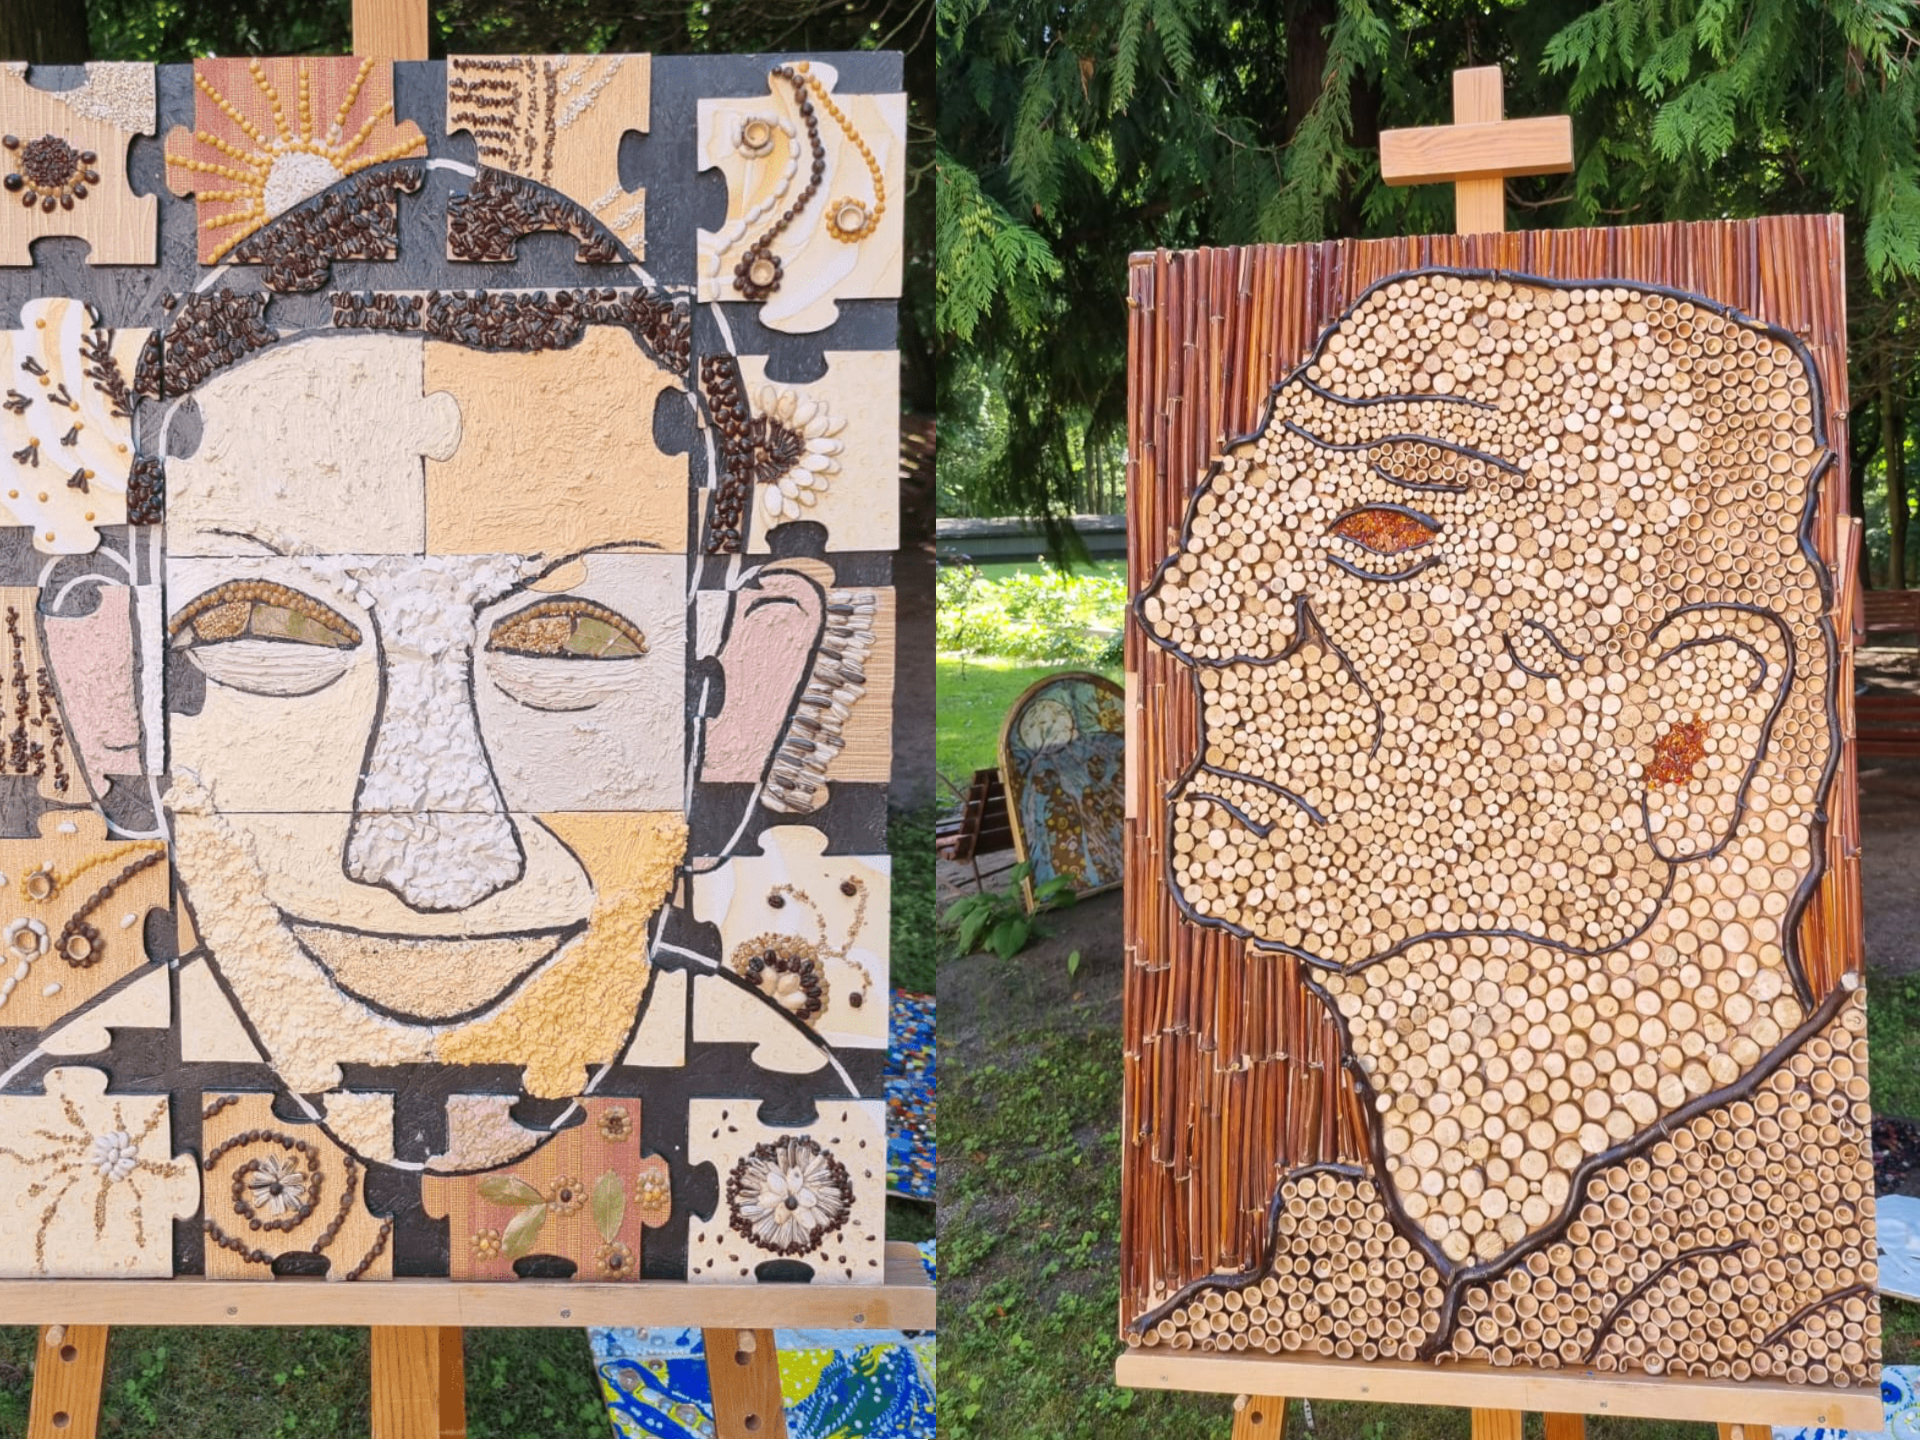 Dra obrazy na sztalugach, oba przedstawiają twarze mężczyzn, jednen z profilu drugi obraz z przodu. Wykonane z galęzi, drewna, kamyków, pestek.